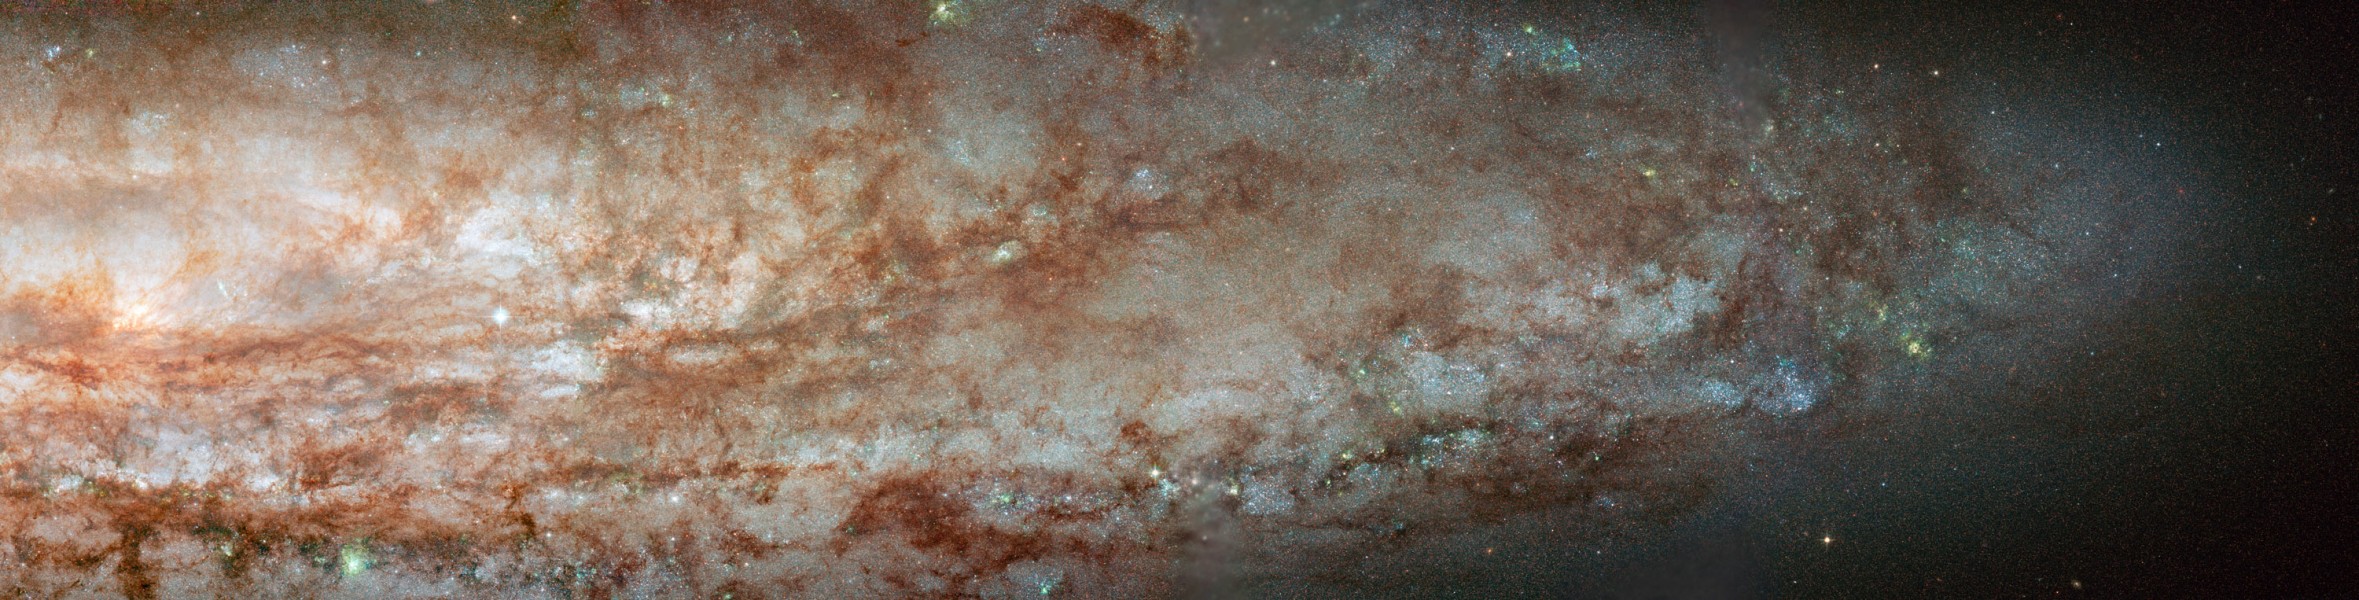 Gros plan sur NGC 253